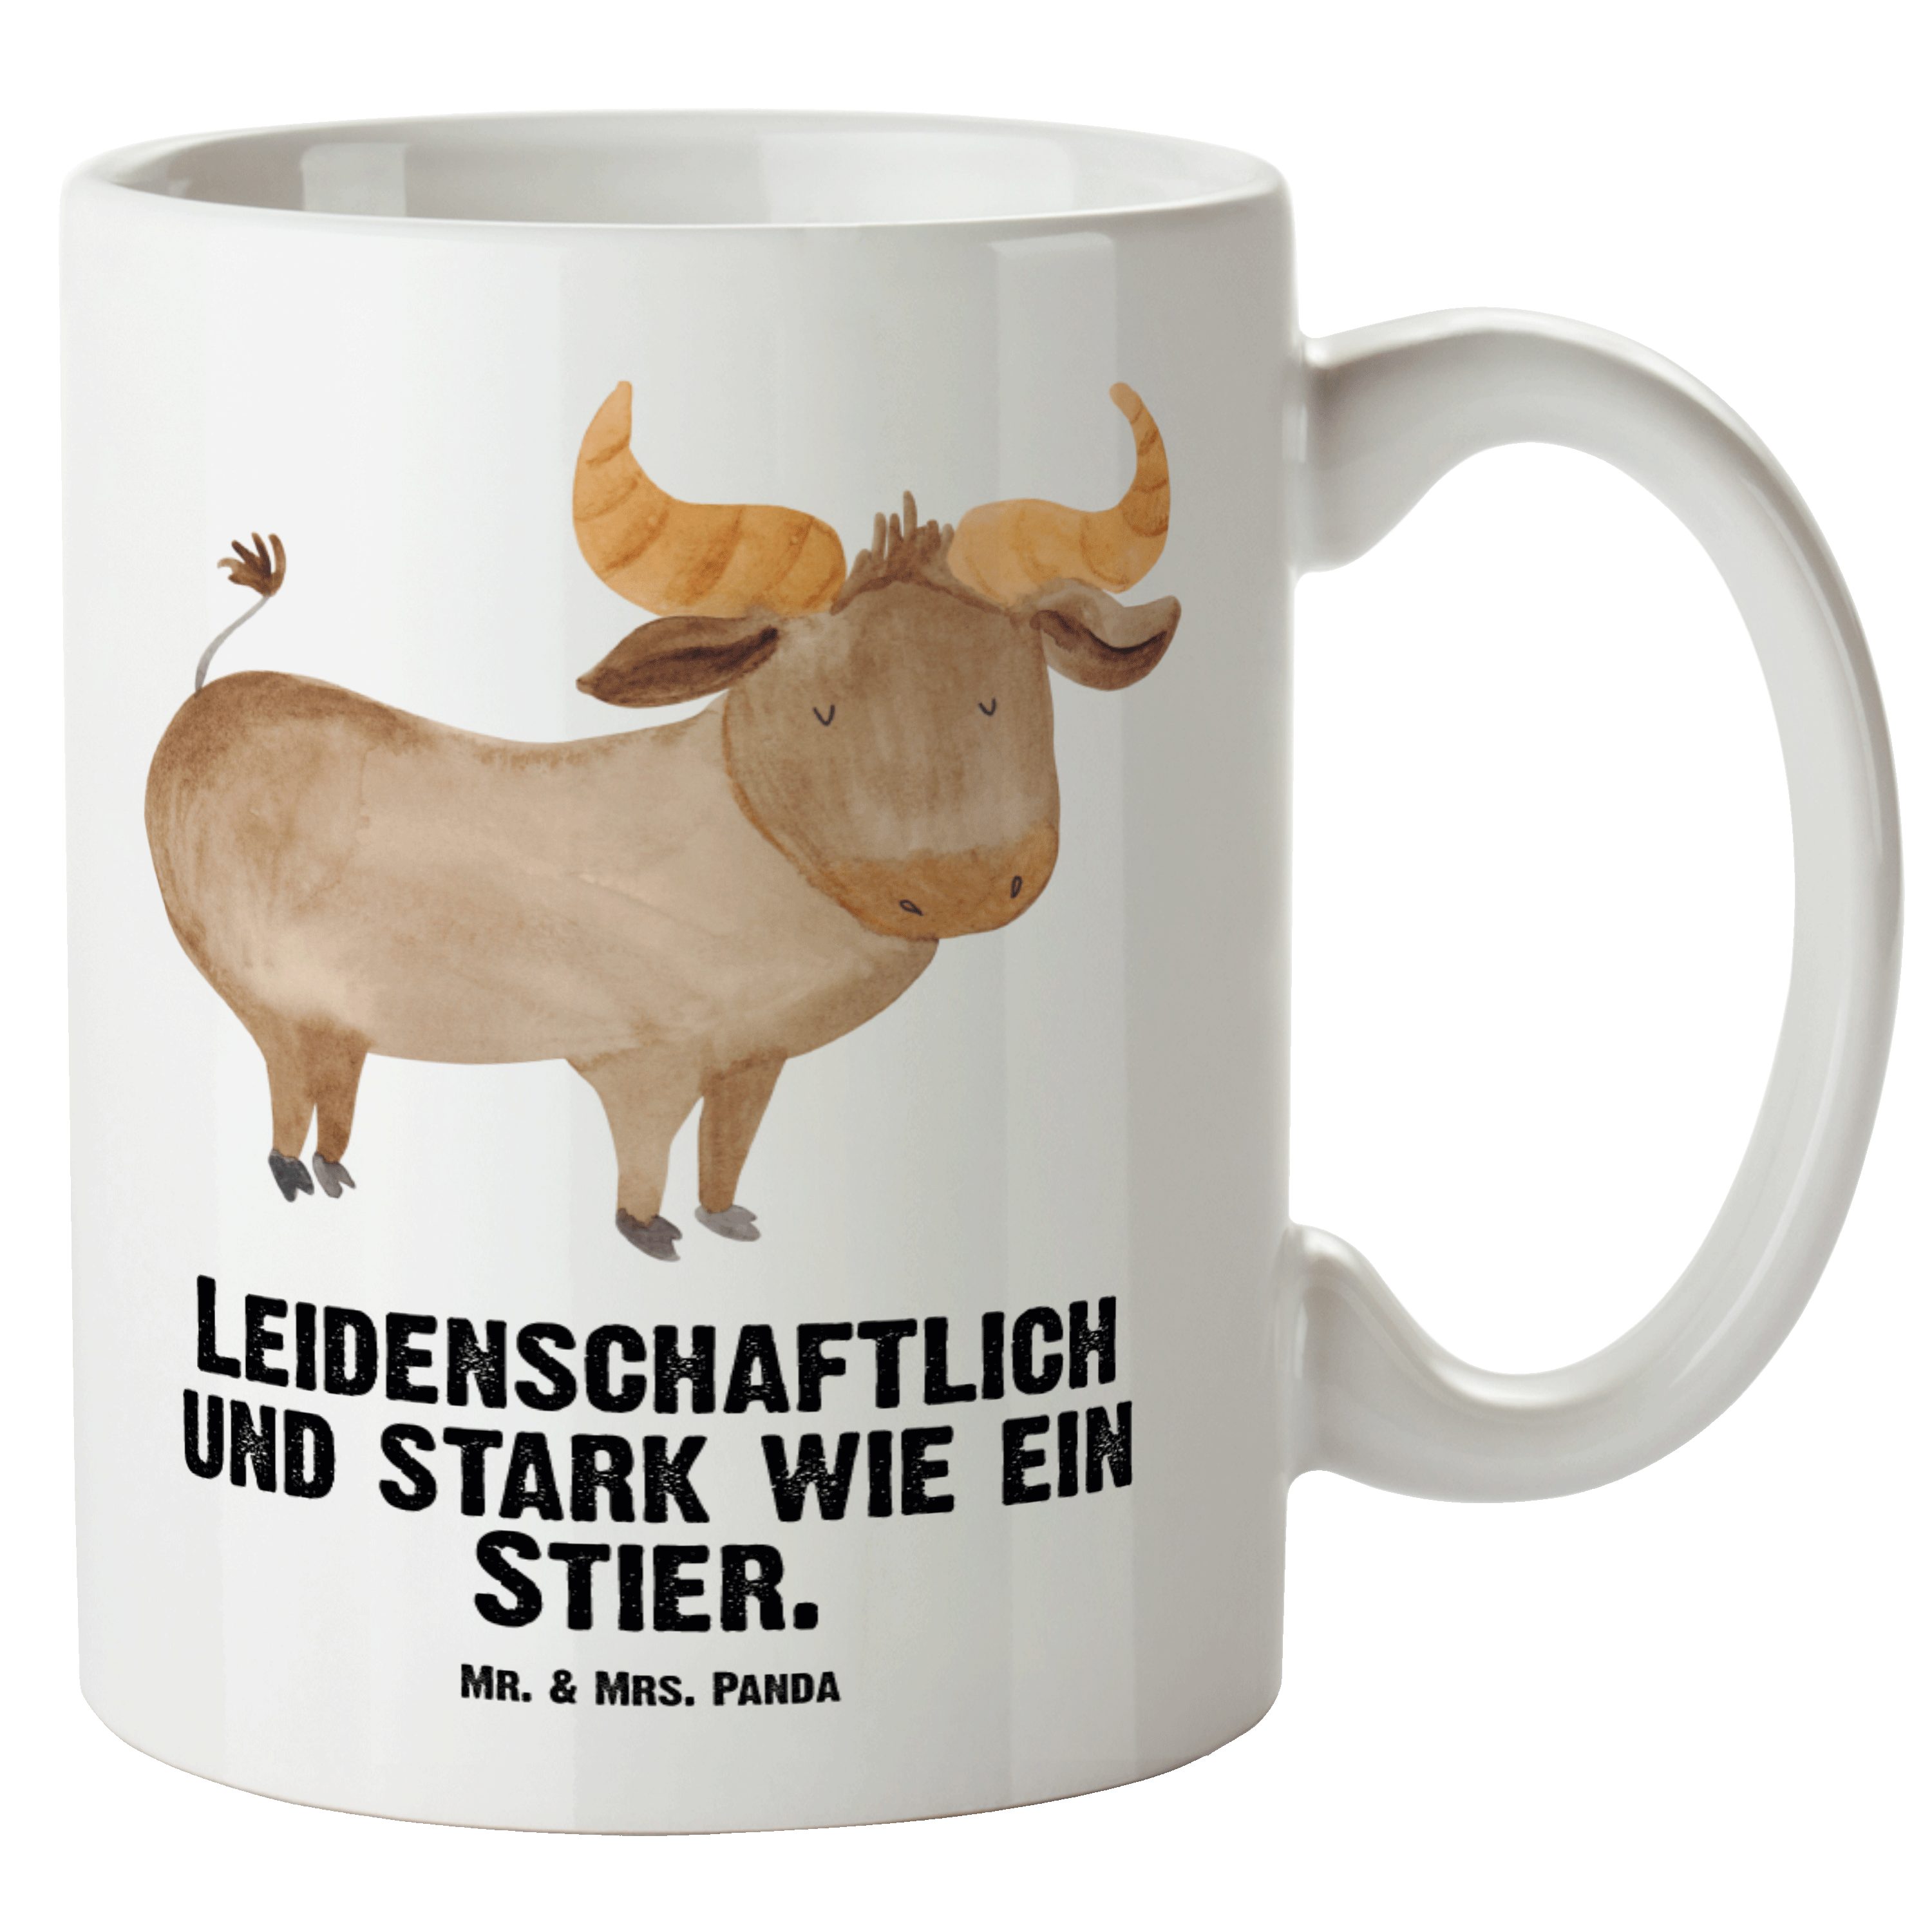 Mr. & Mrs. Panda Tasse Sternzeichen Stier - Weiß - Geschenk, Grosse Kaffeetasse, Stier Stern, XL Tasse Keramik